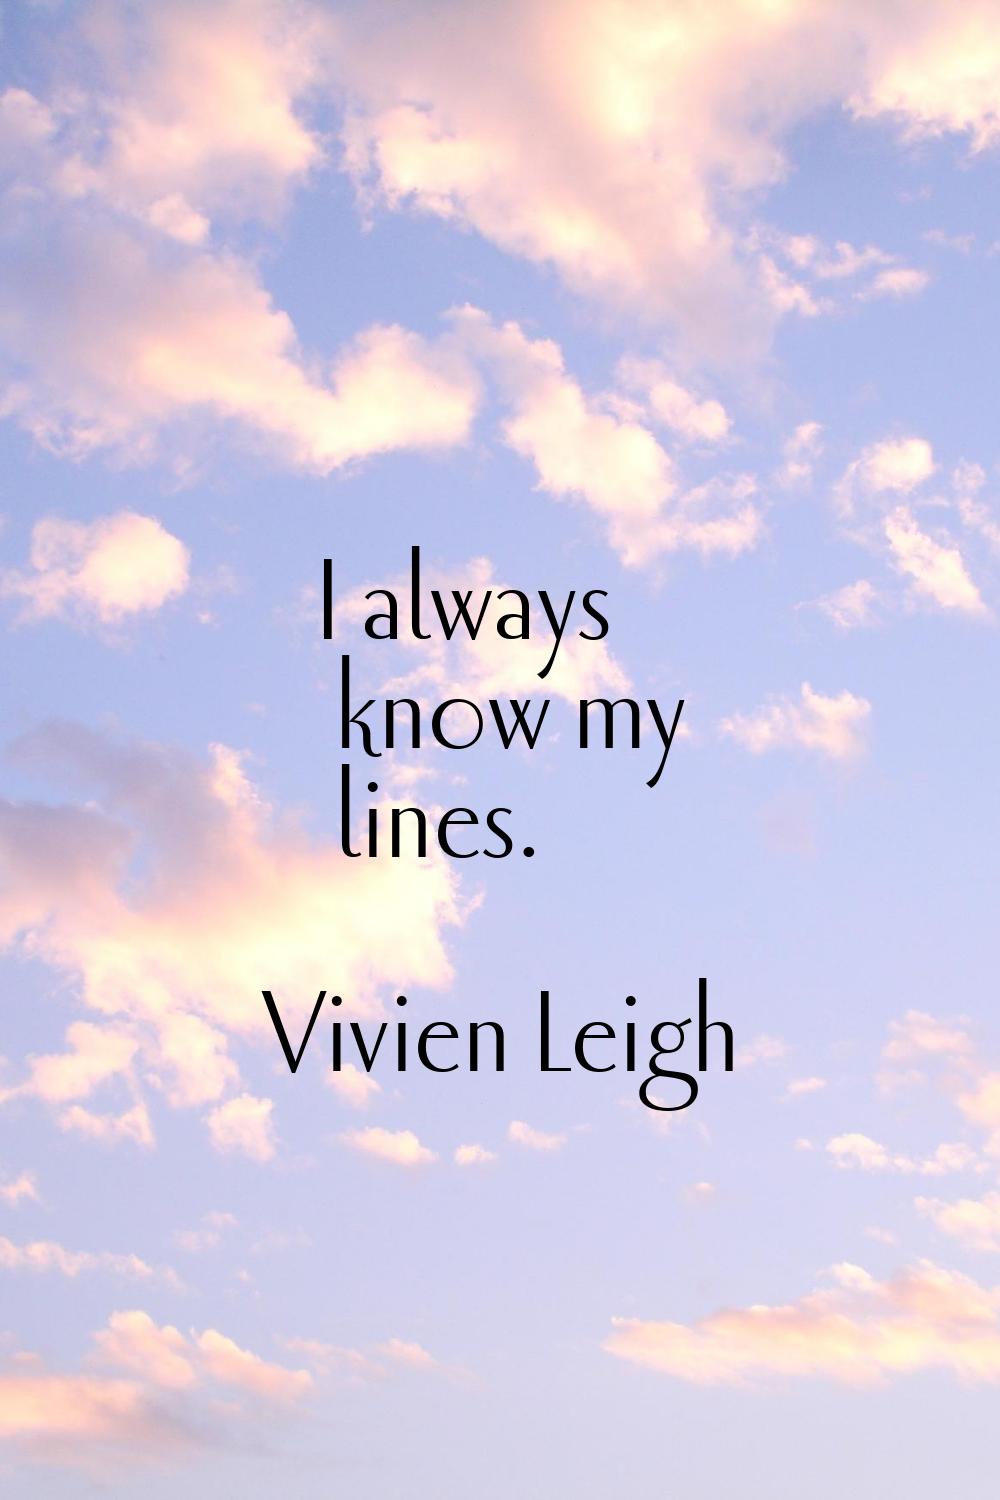 I always know my lines.